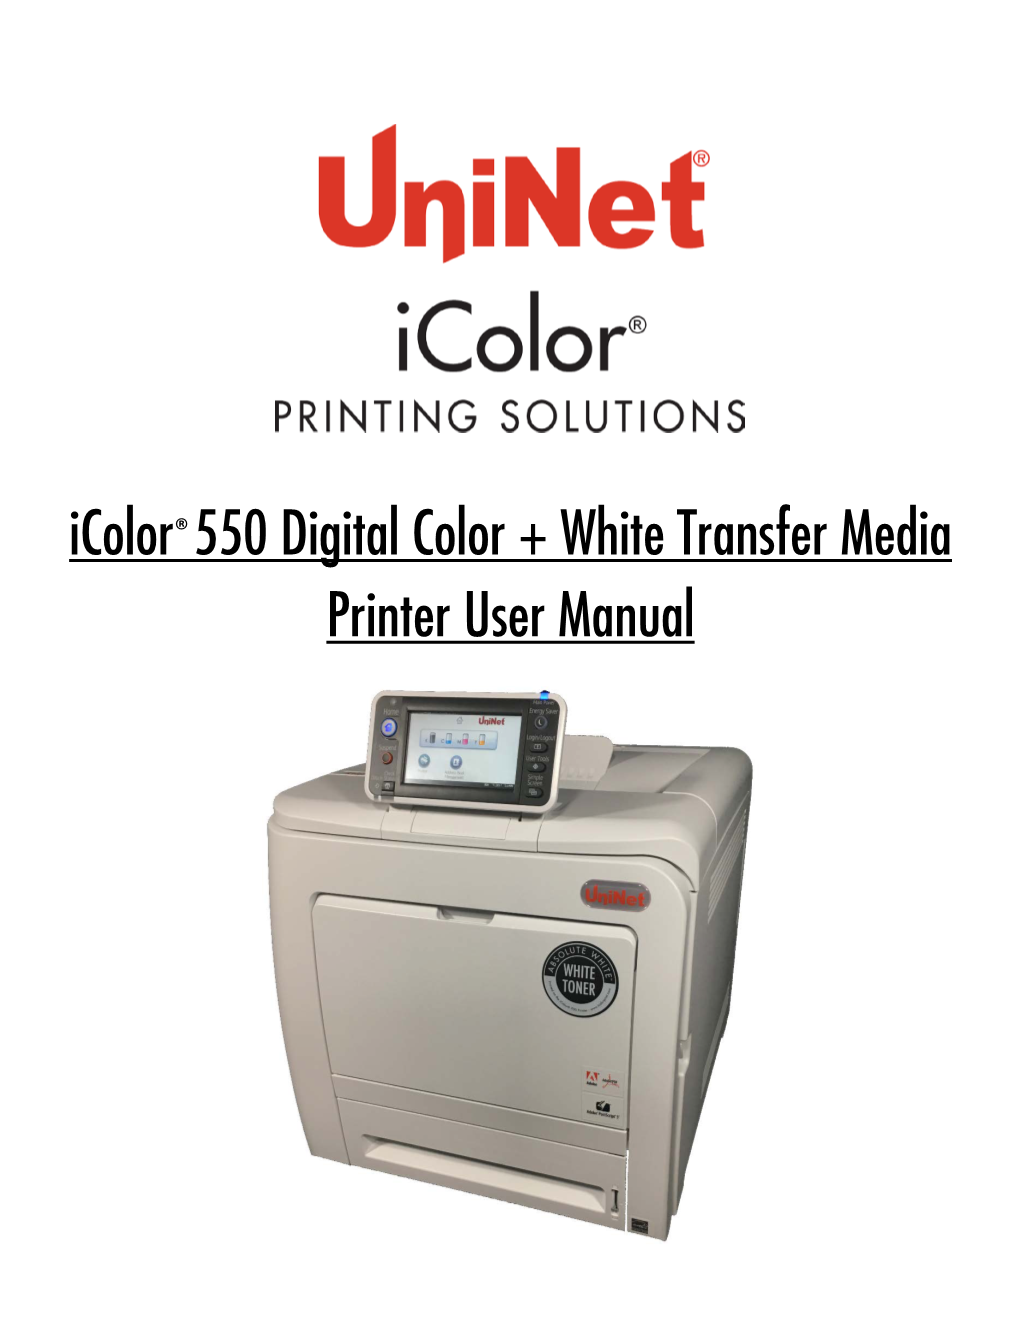 Icolor®550 Digital Color + White Transfer Media Printer User Manual